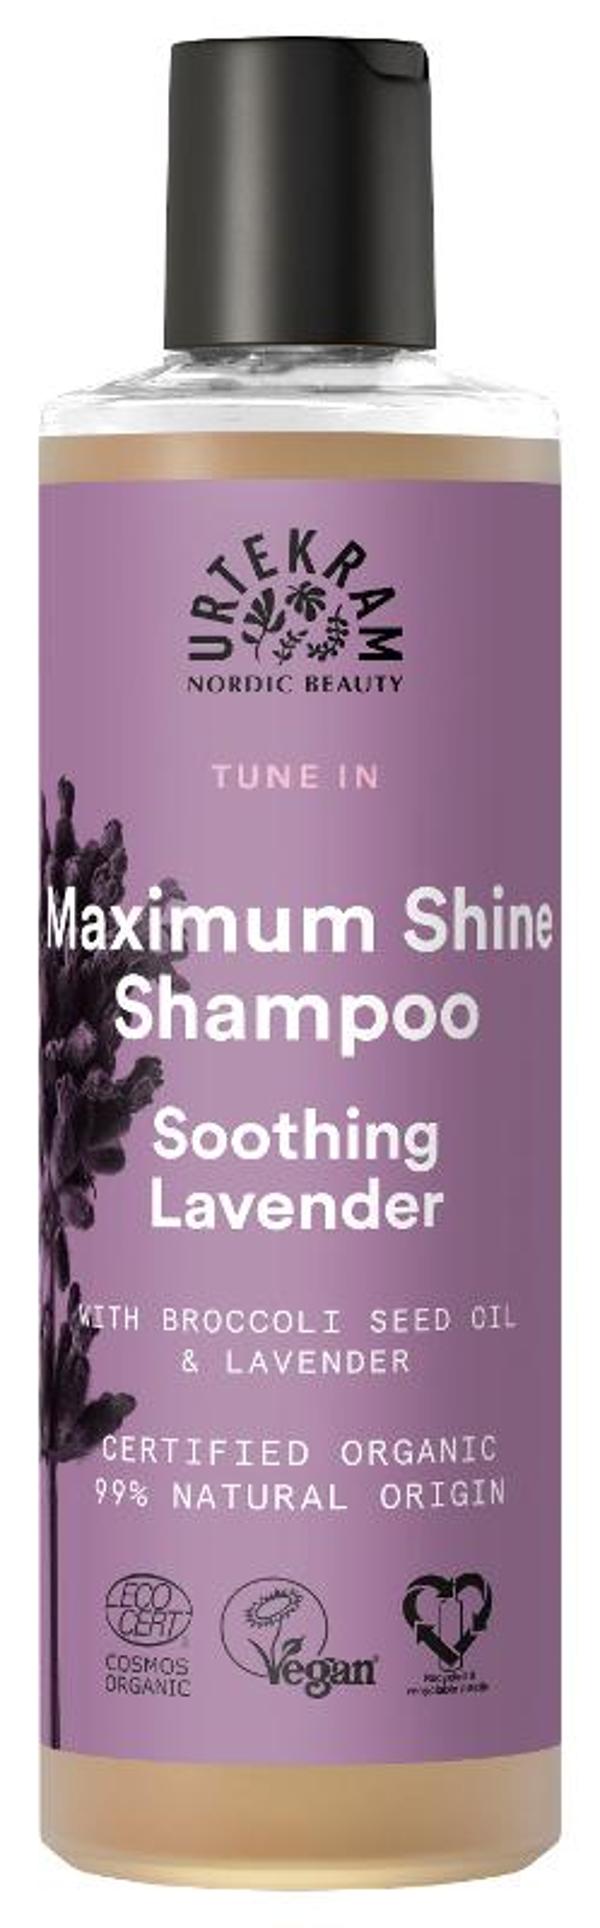 Produktfoto zu Maximum Shine Shampoo Lavender